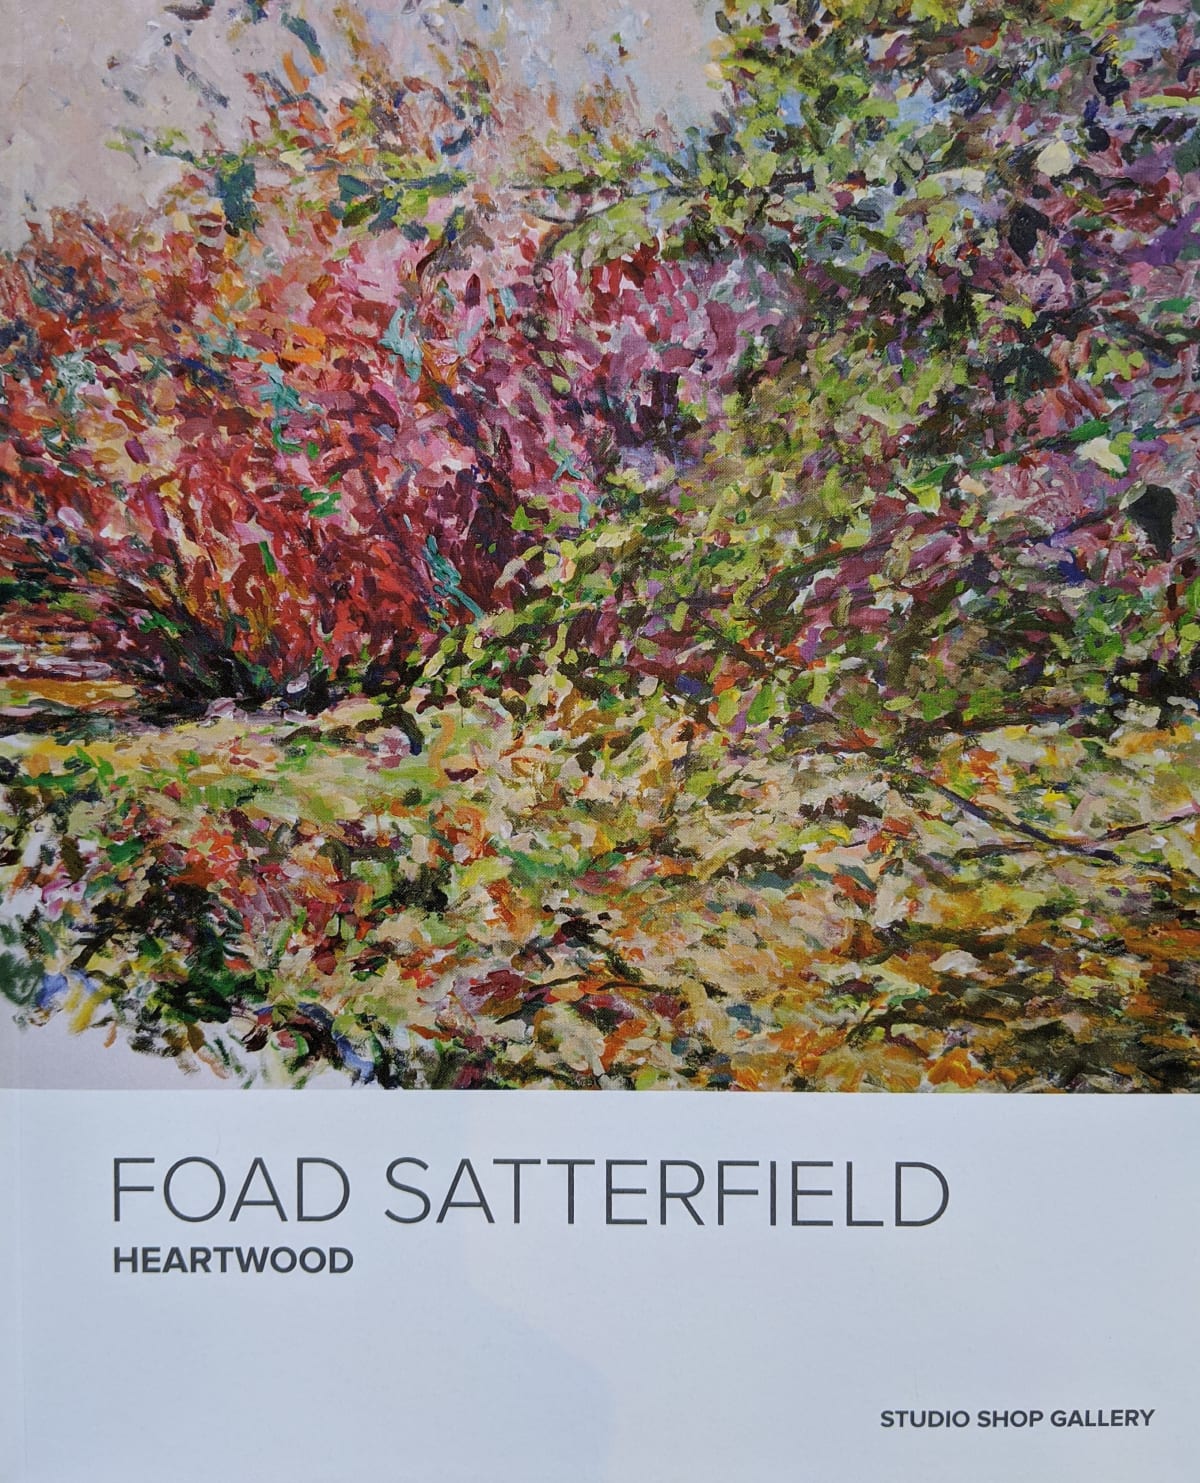 Foad Satterfield